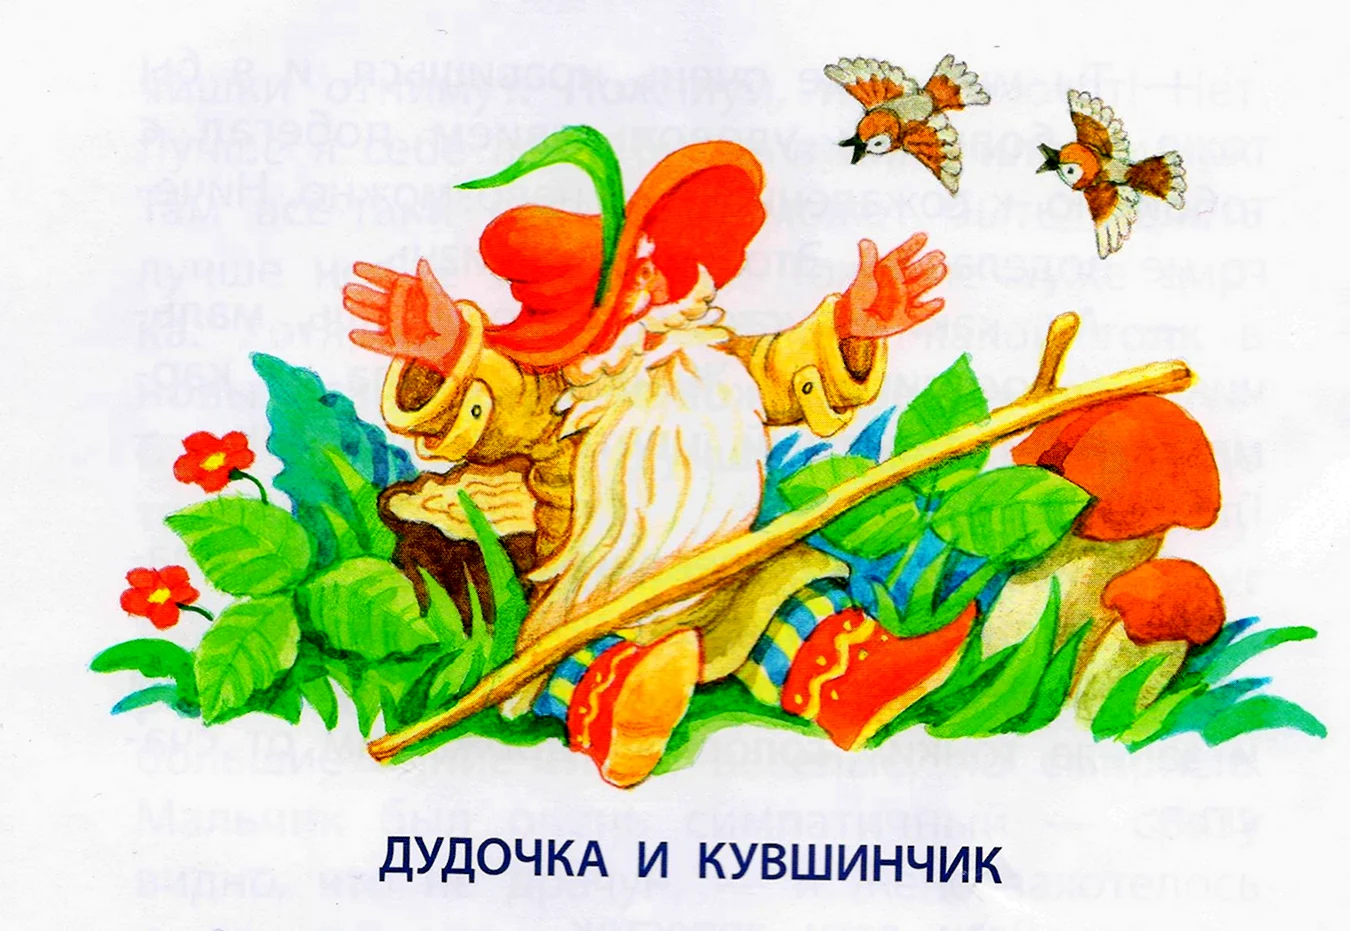 Катаев дудочка и кувшинчик раскраска для детей. Для срисовки